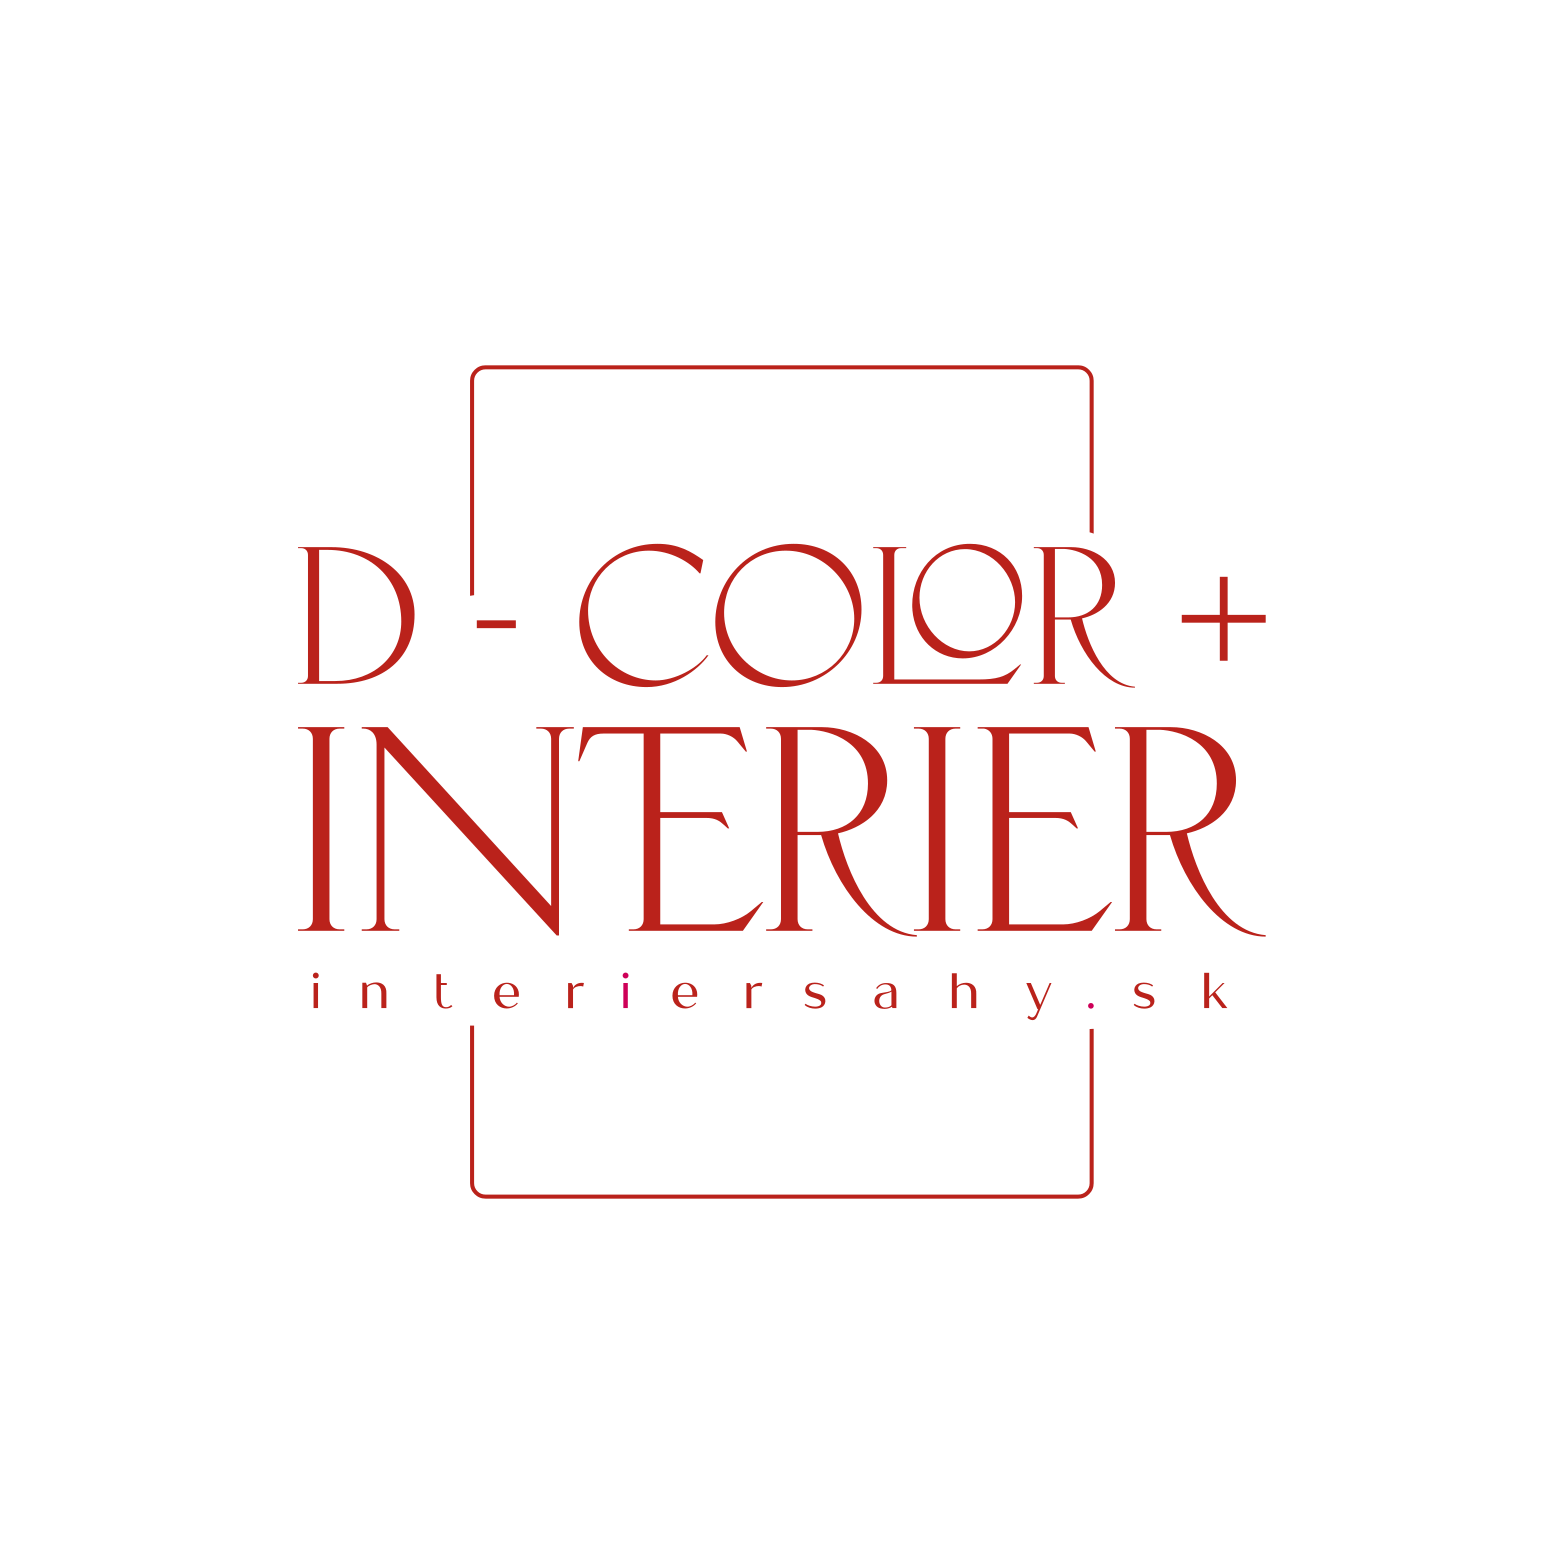 D-COLOR + INTERIER